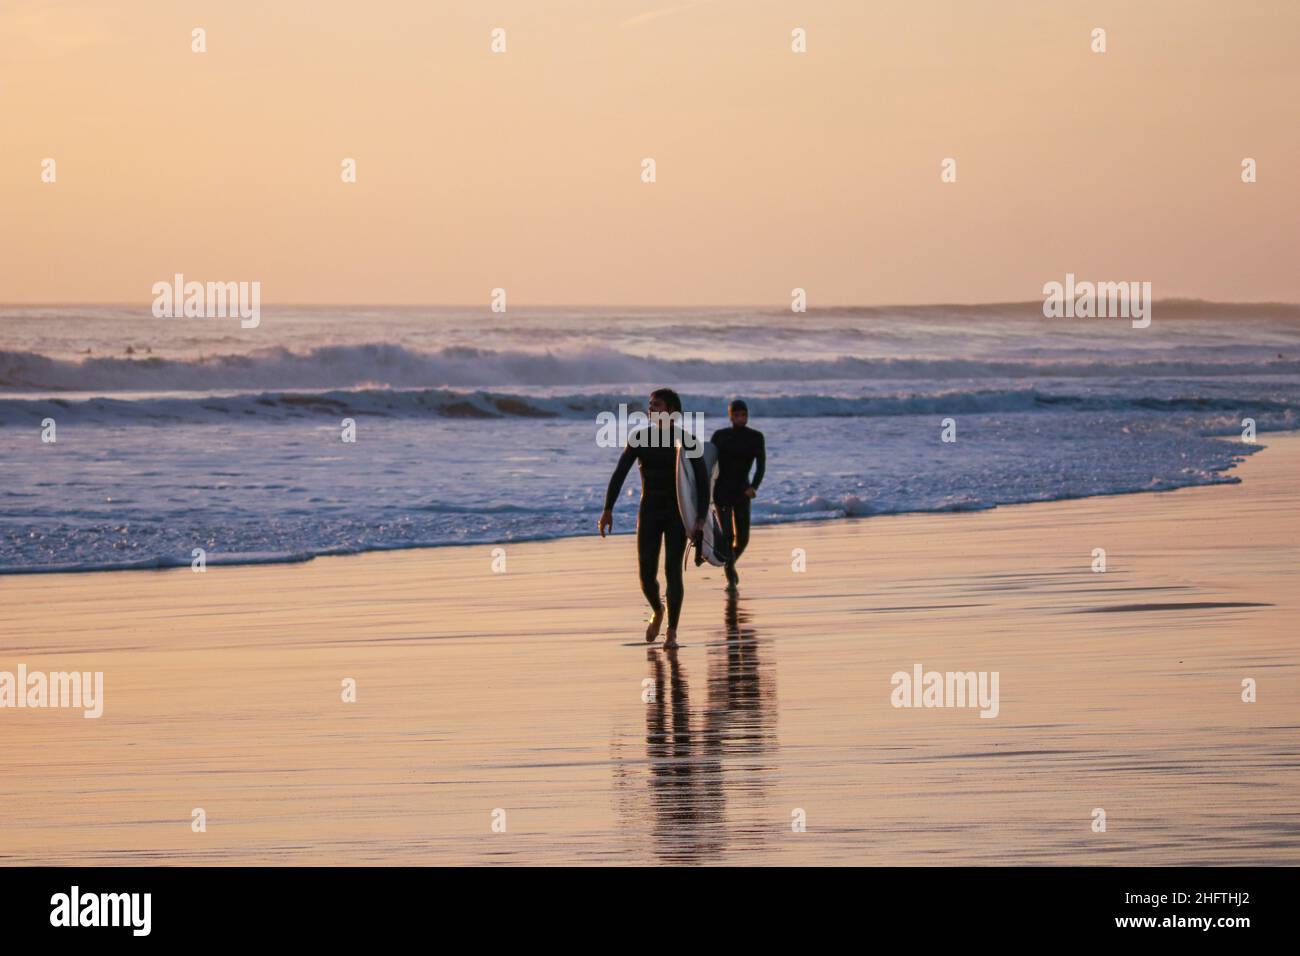 Deux surfeurs avec surf allant surfer sur une plage au coucher du soleil. Banque D'Images